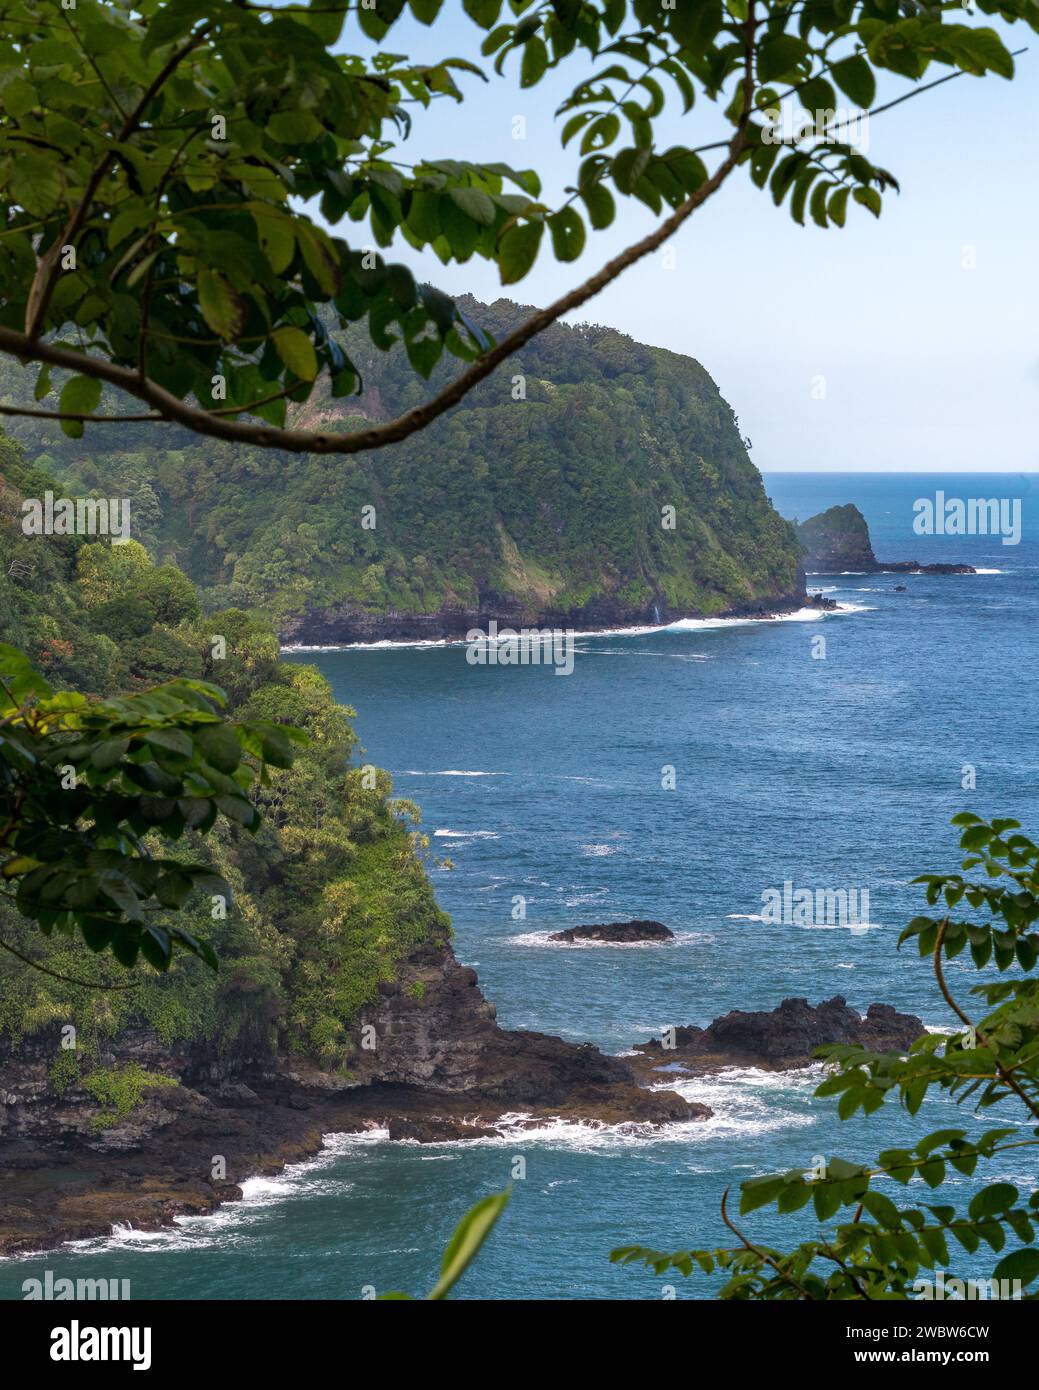 Affacciate sul tranquillo Pacifico, le lussureggianti scogliere costiere di Maui rivelano la bellezza mozzafiato lungo la strada per Hana. Foto Stock